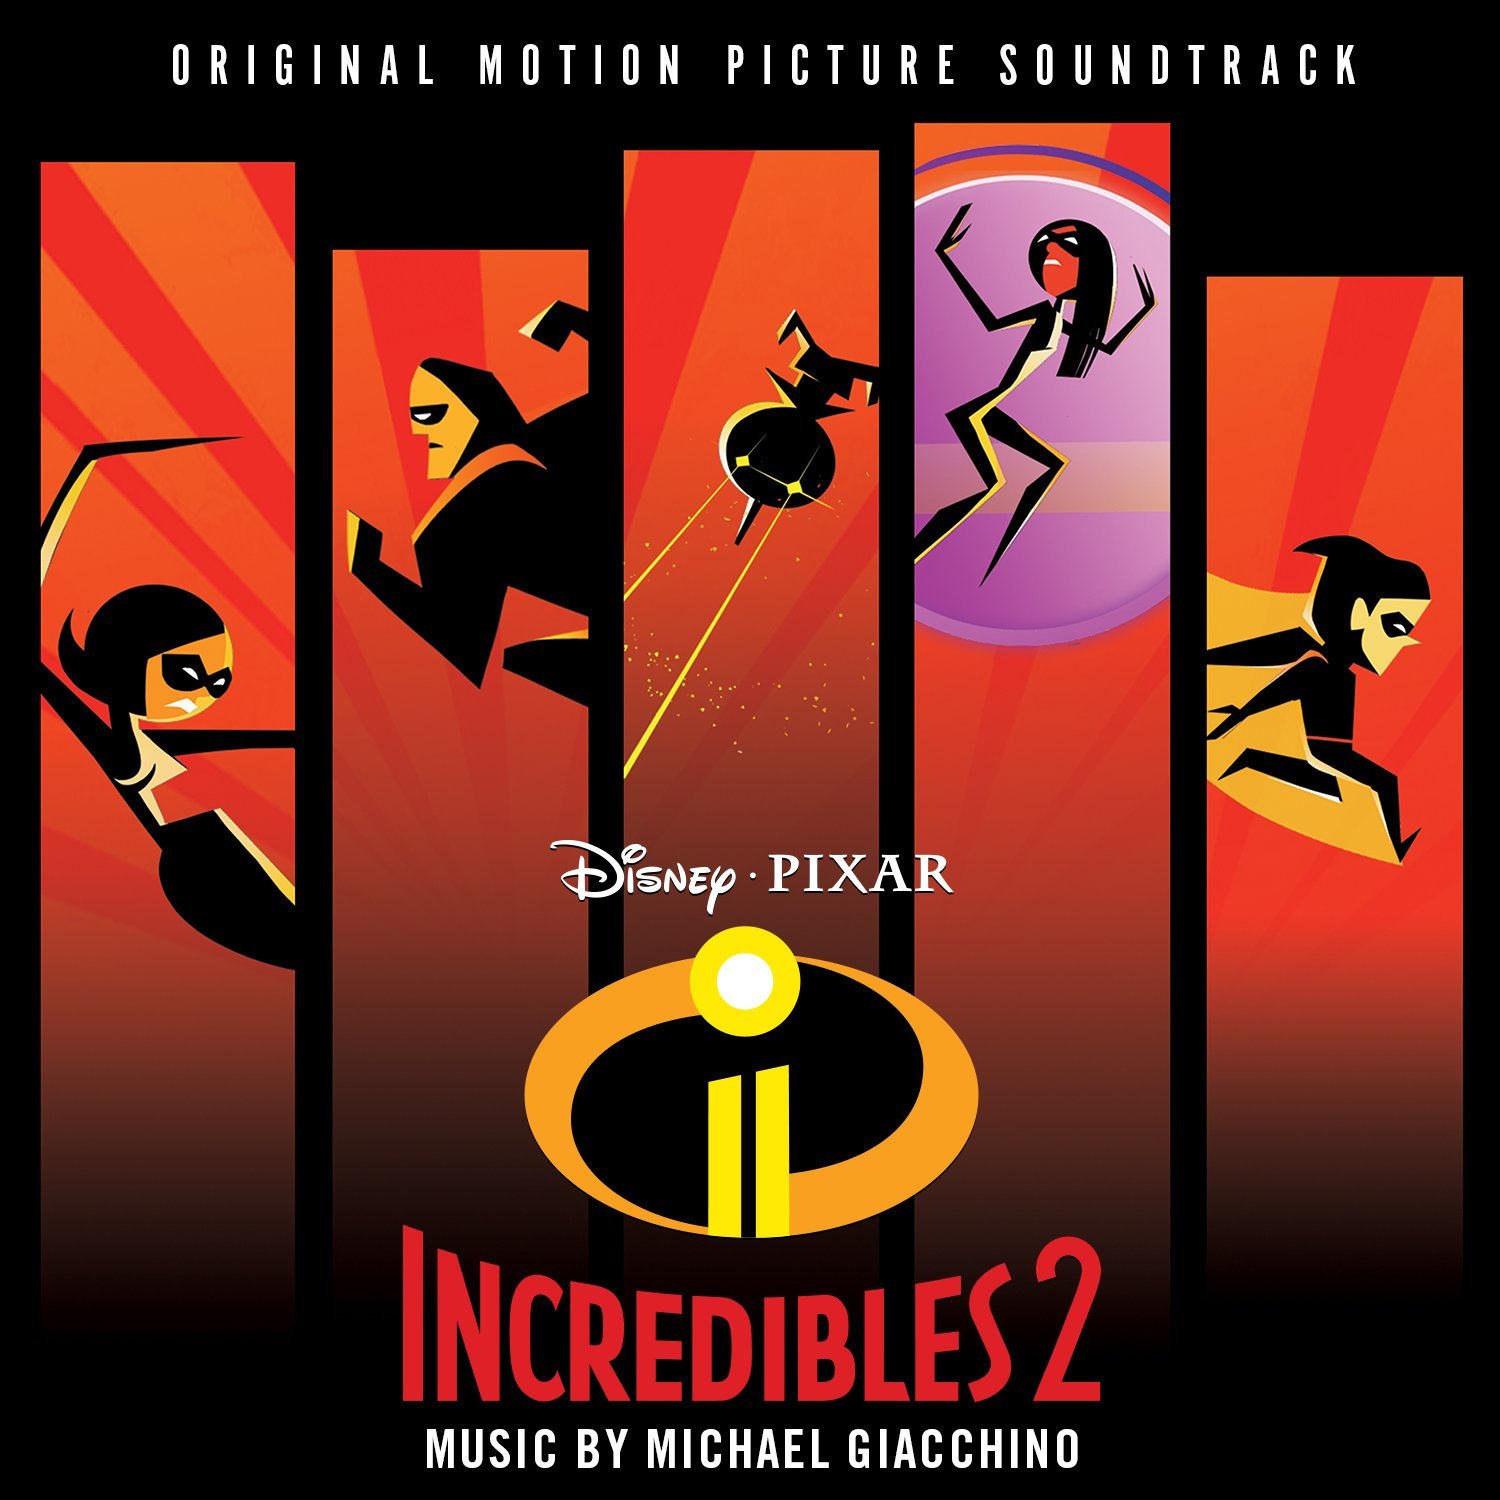 Les Indestructibles 2 (Incredibles 2)